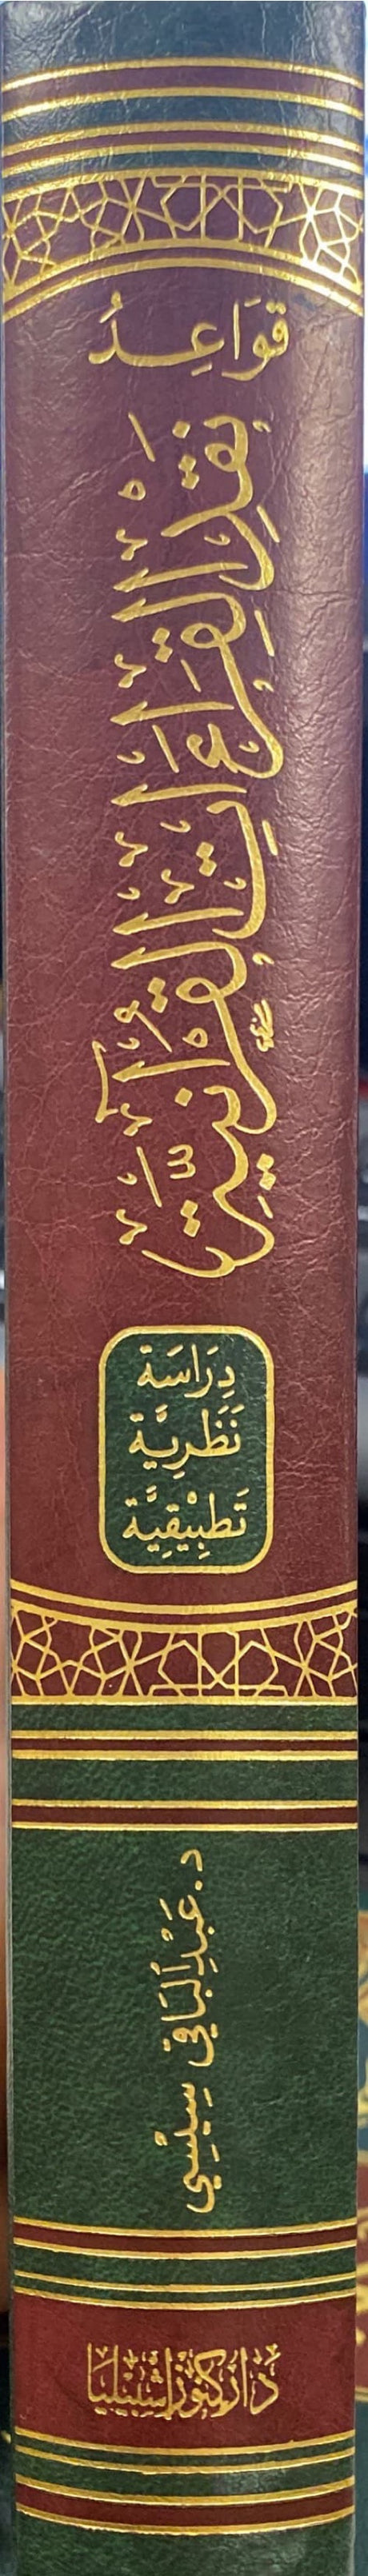 قواعد نقد القراءات القرانية Qawaid Naqd Al Qiraat Al Quraaniya